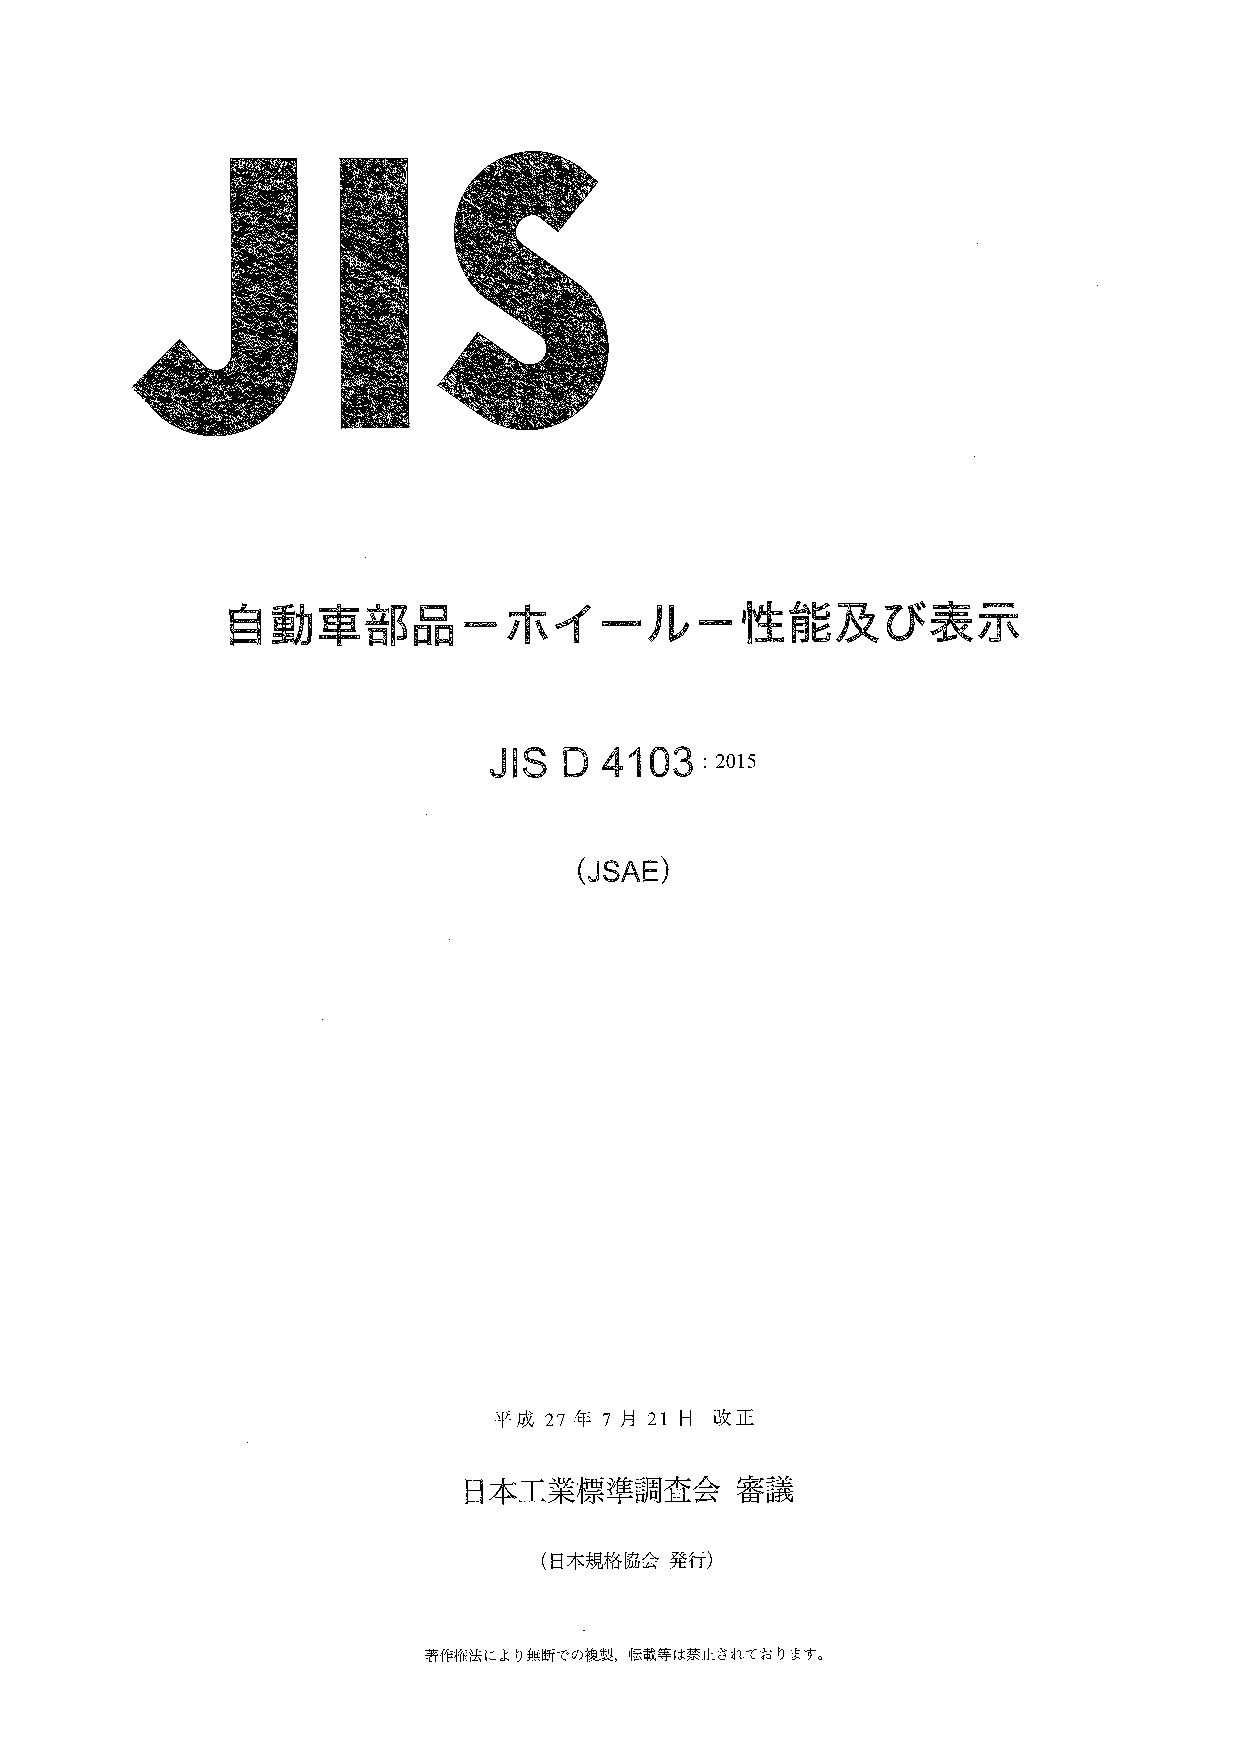 JIS D 4103:2015封面图